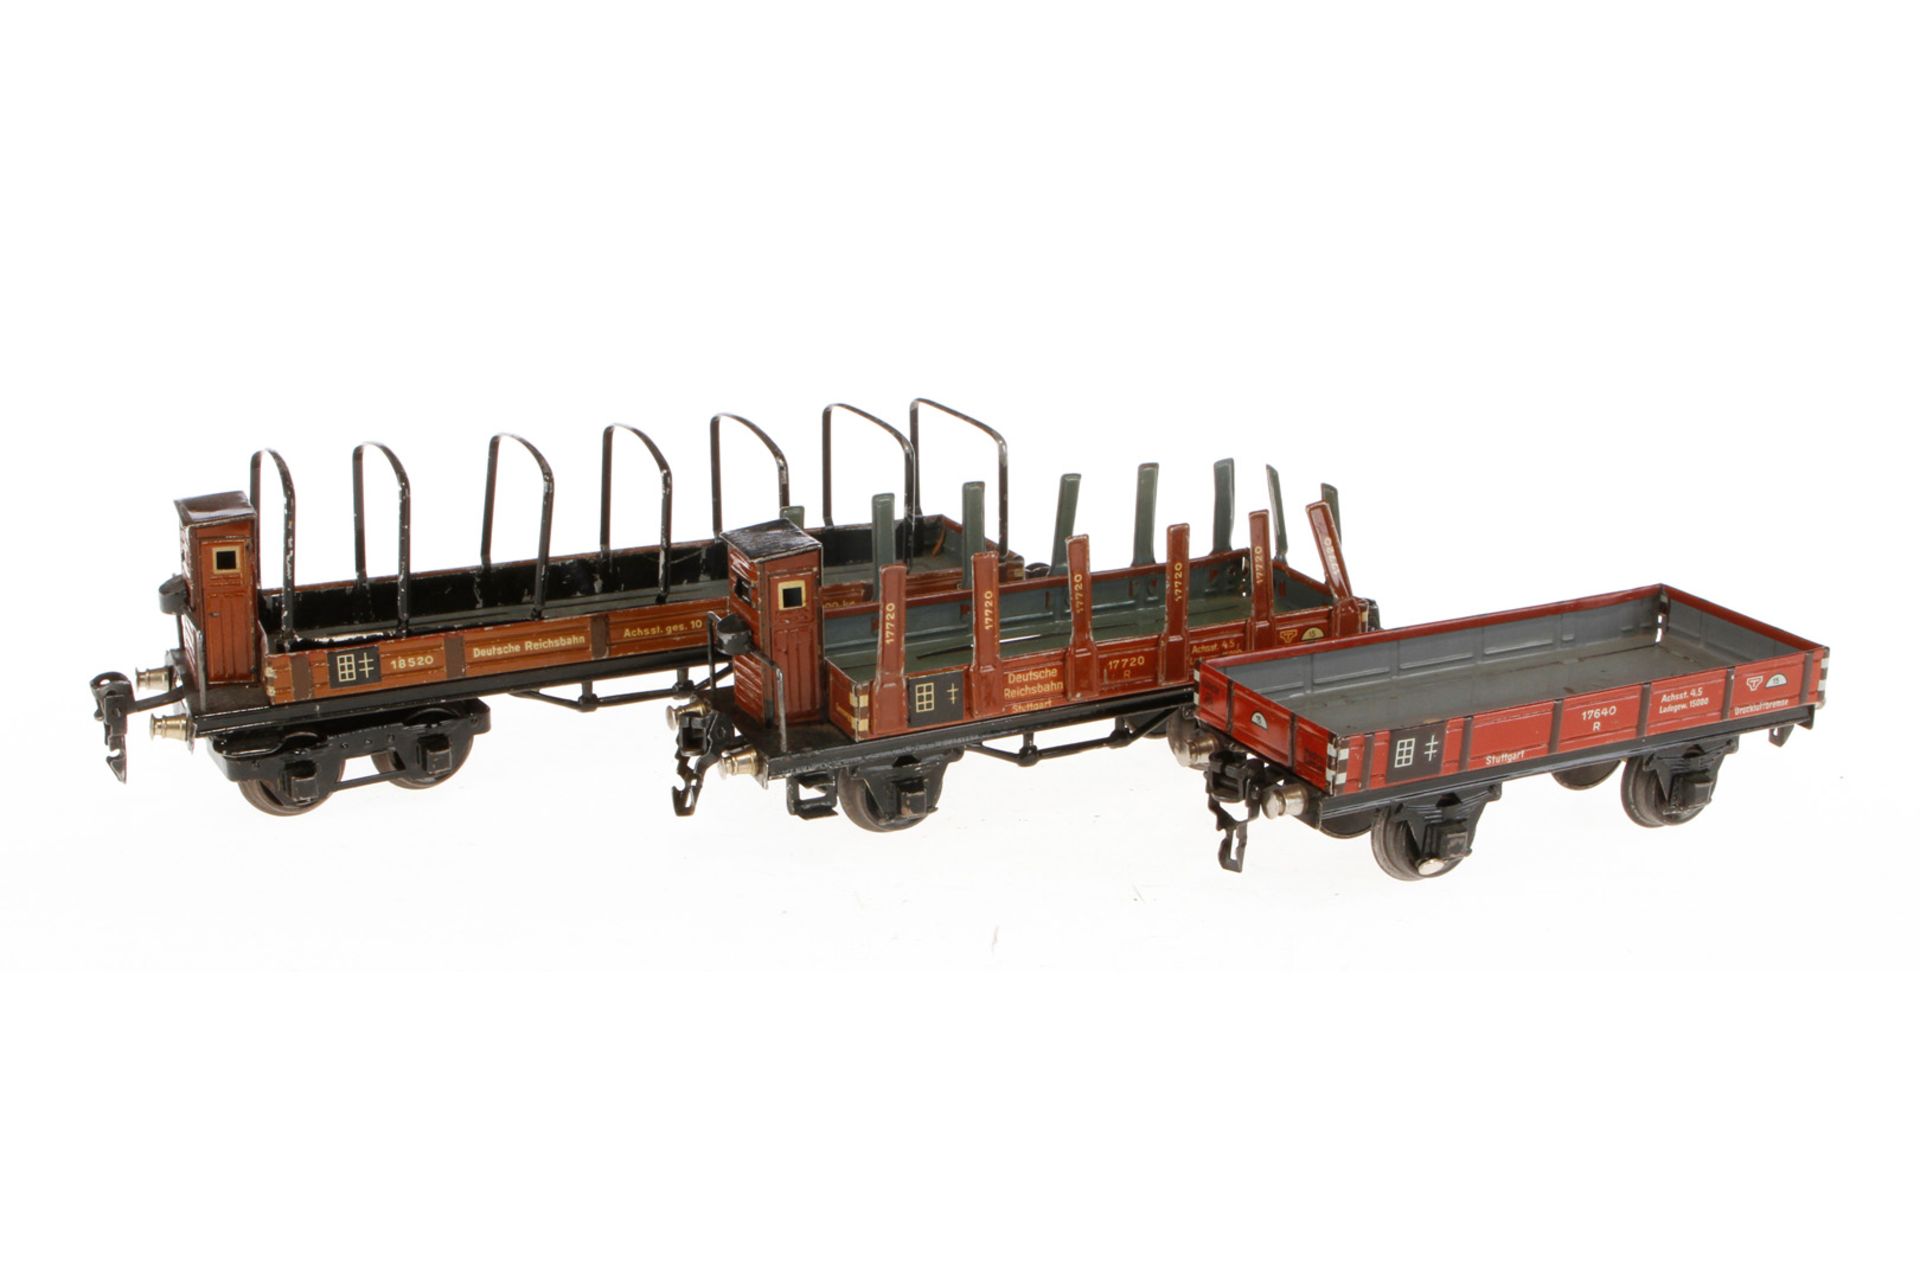 3 Märklin Güterwagen 1764, 1772 und 1853, Spur 0, CL, NV, L 16,5-24,5, Z 4